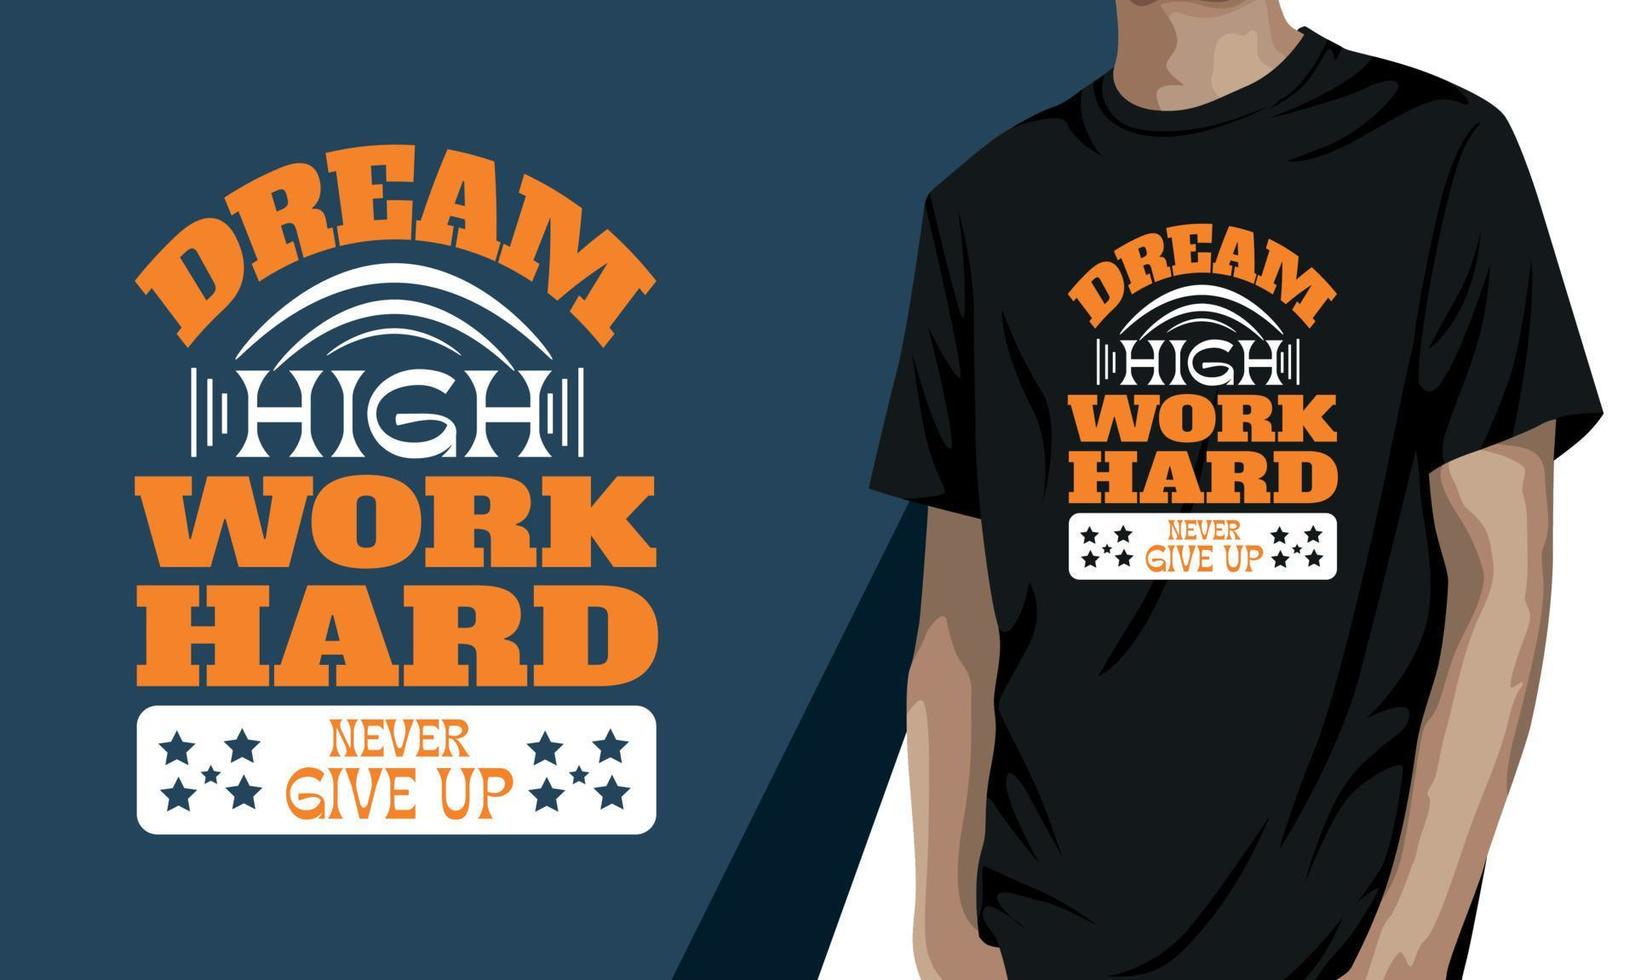 träume hoch, arbeite hart, gib niemals auf, motivierendes t-shirt-design vektor